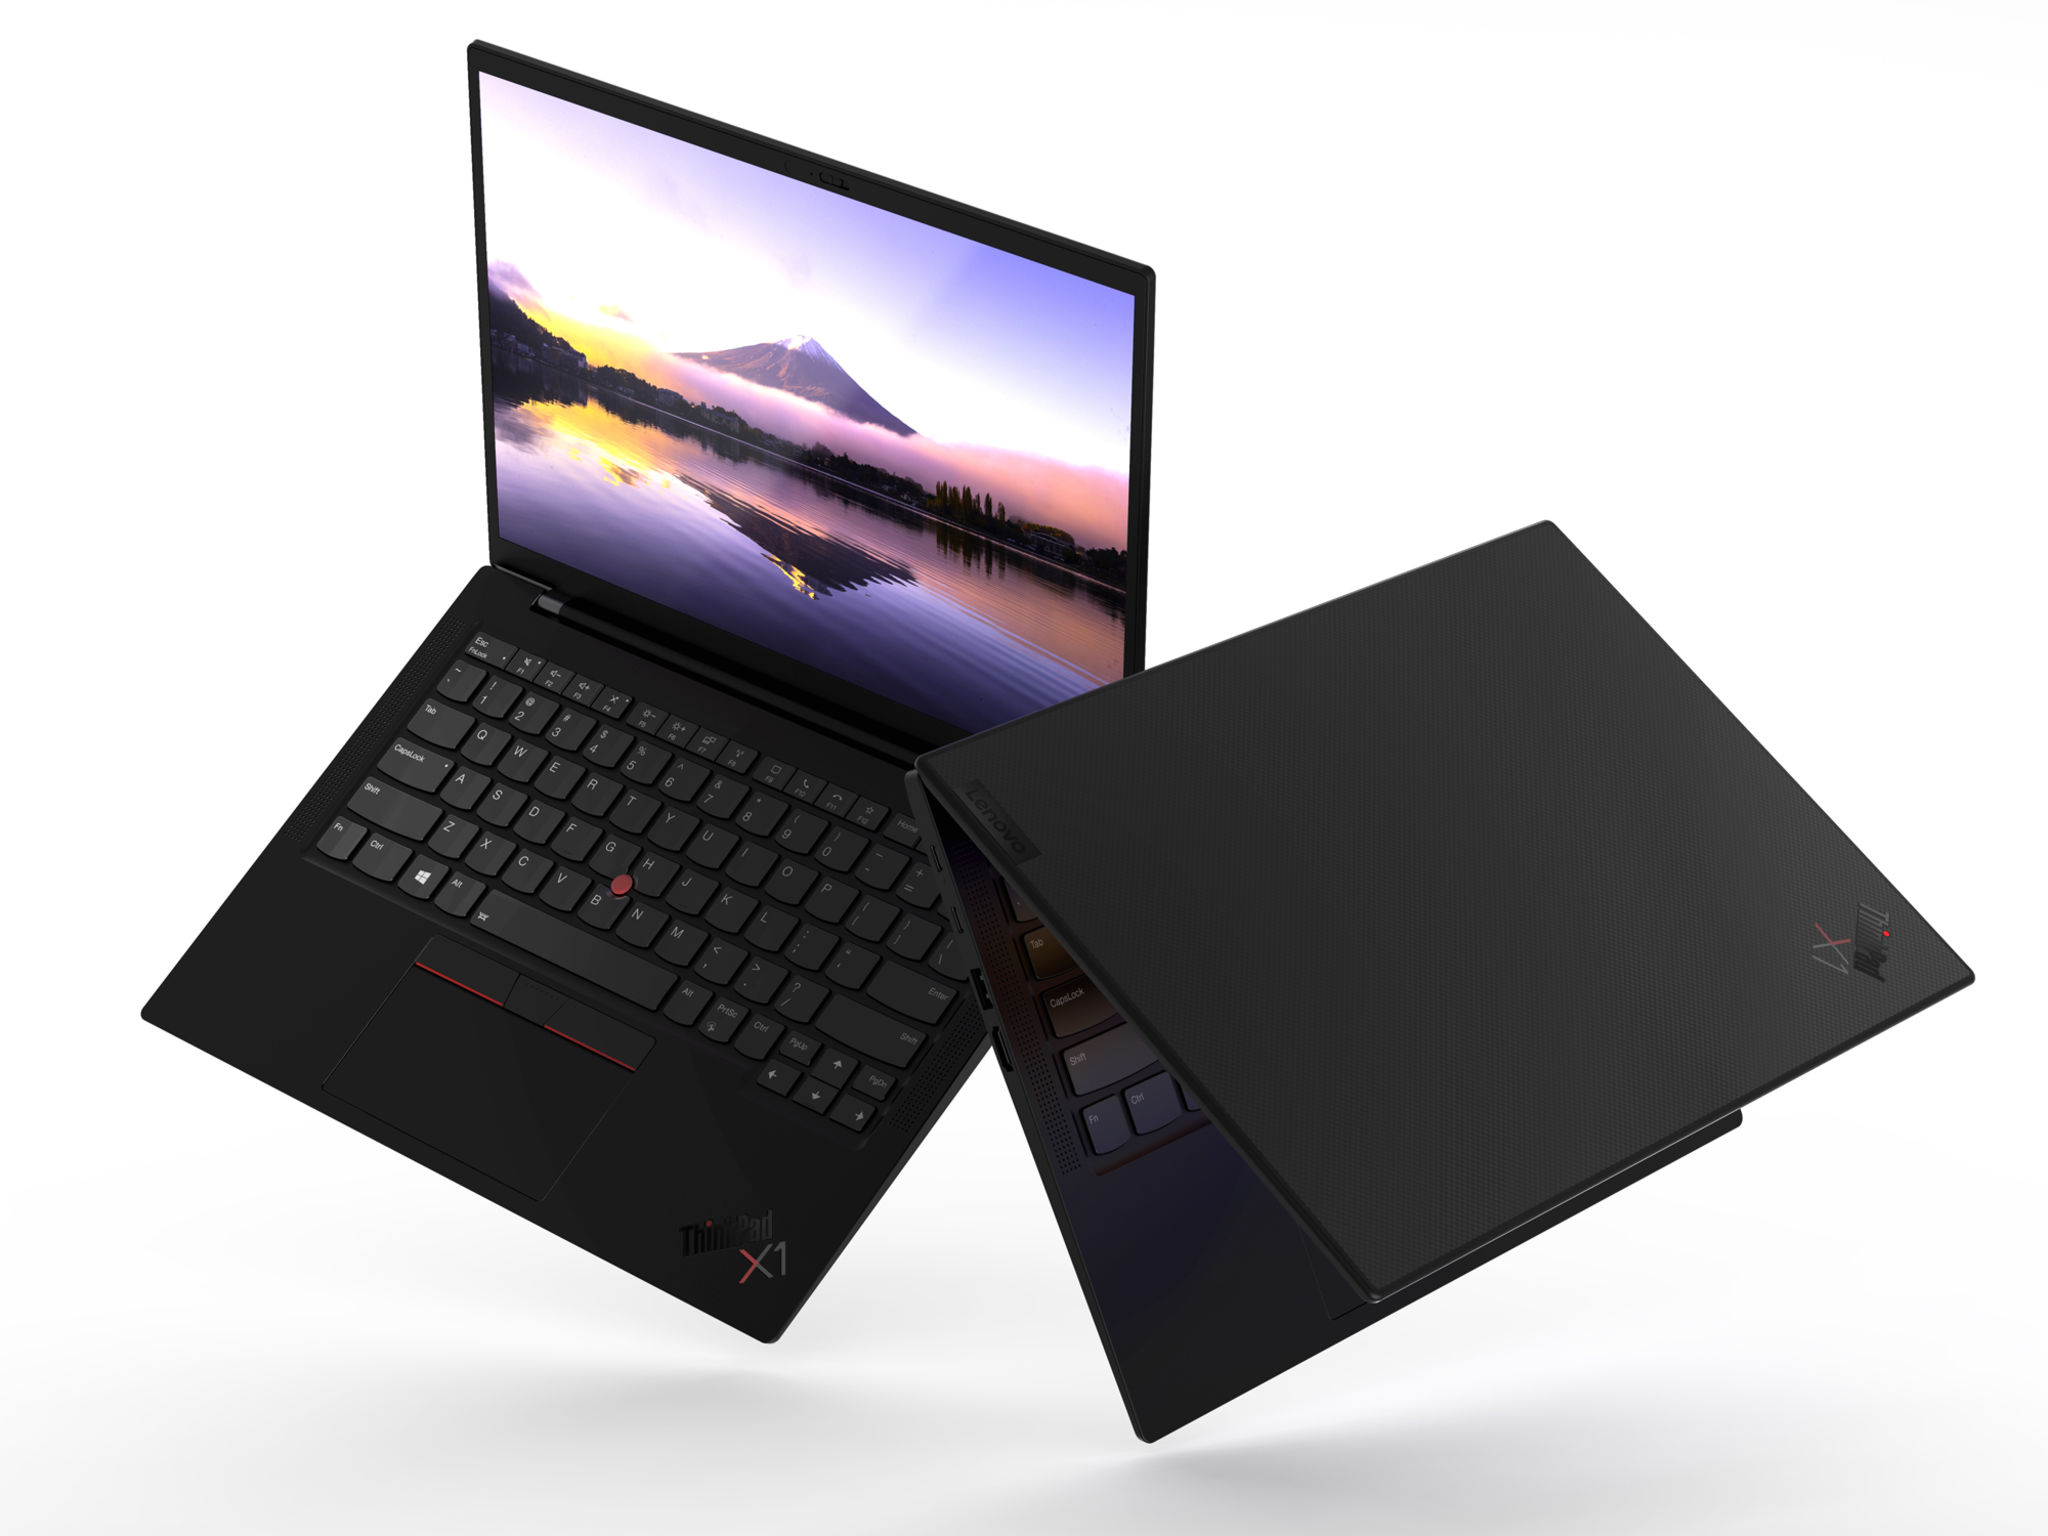 Mua Bán Laptop Lenovo Thinkpad x1 carbon Gen 9 Cũ Mới Giá Rẻ/ Màn hình 14 inch/ Core i5-1135G7 Thế hệ 11/ Intel Iris Xe Graphics - Phân Phối - Cung Cấp -